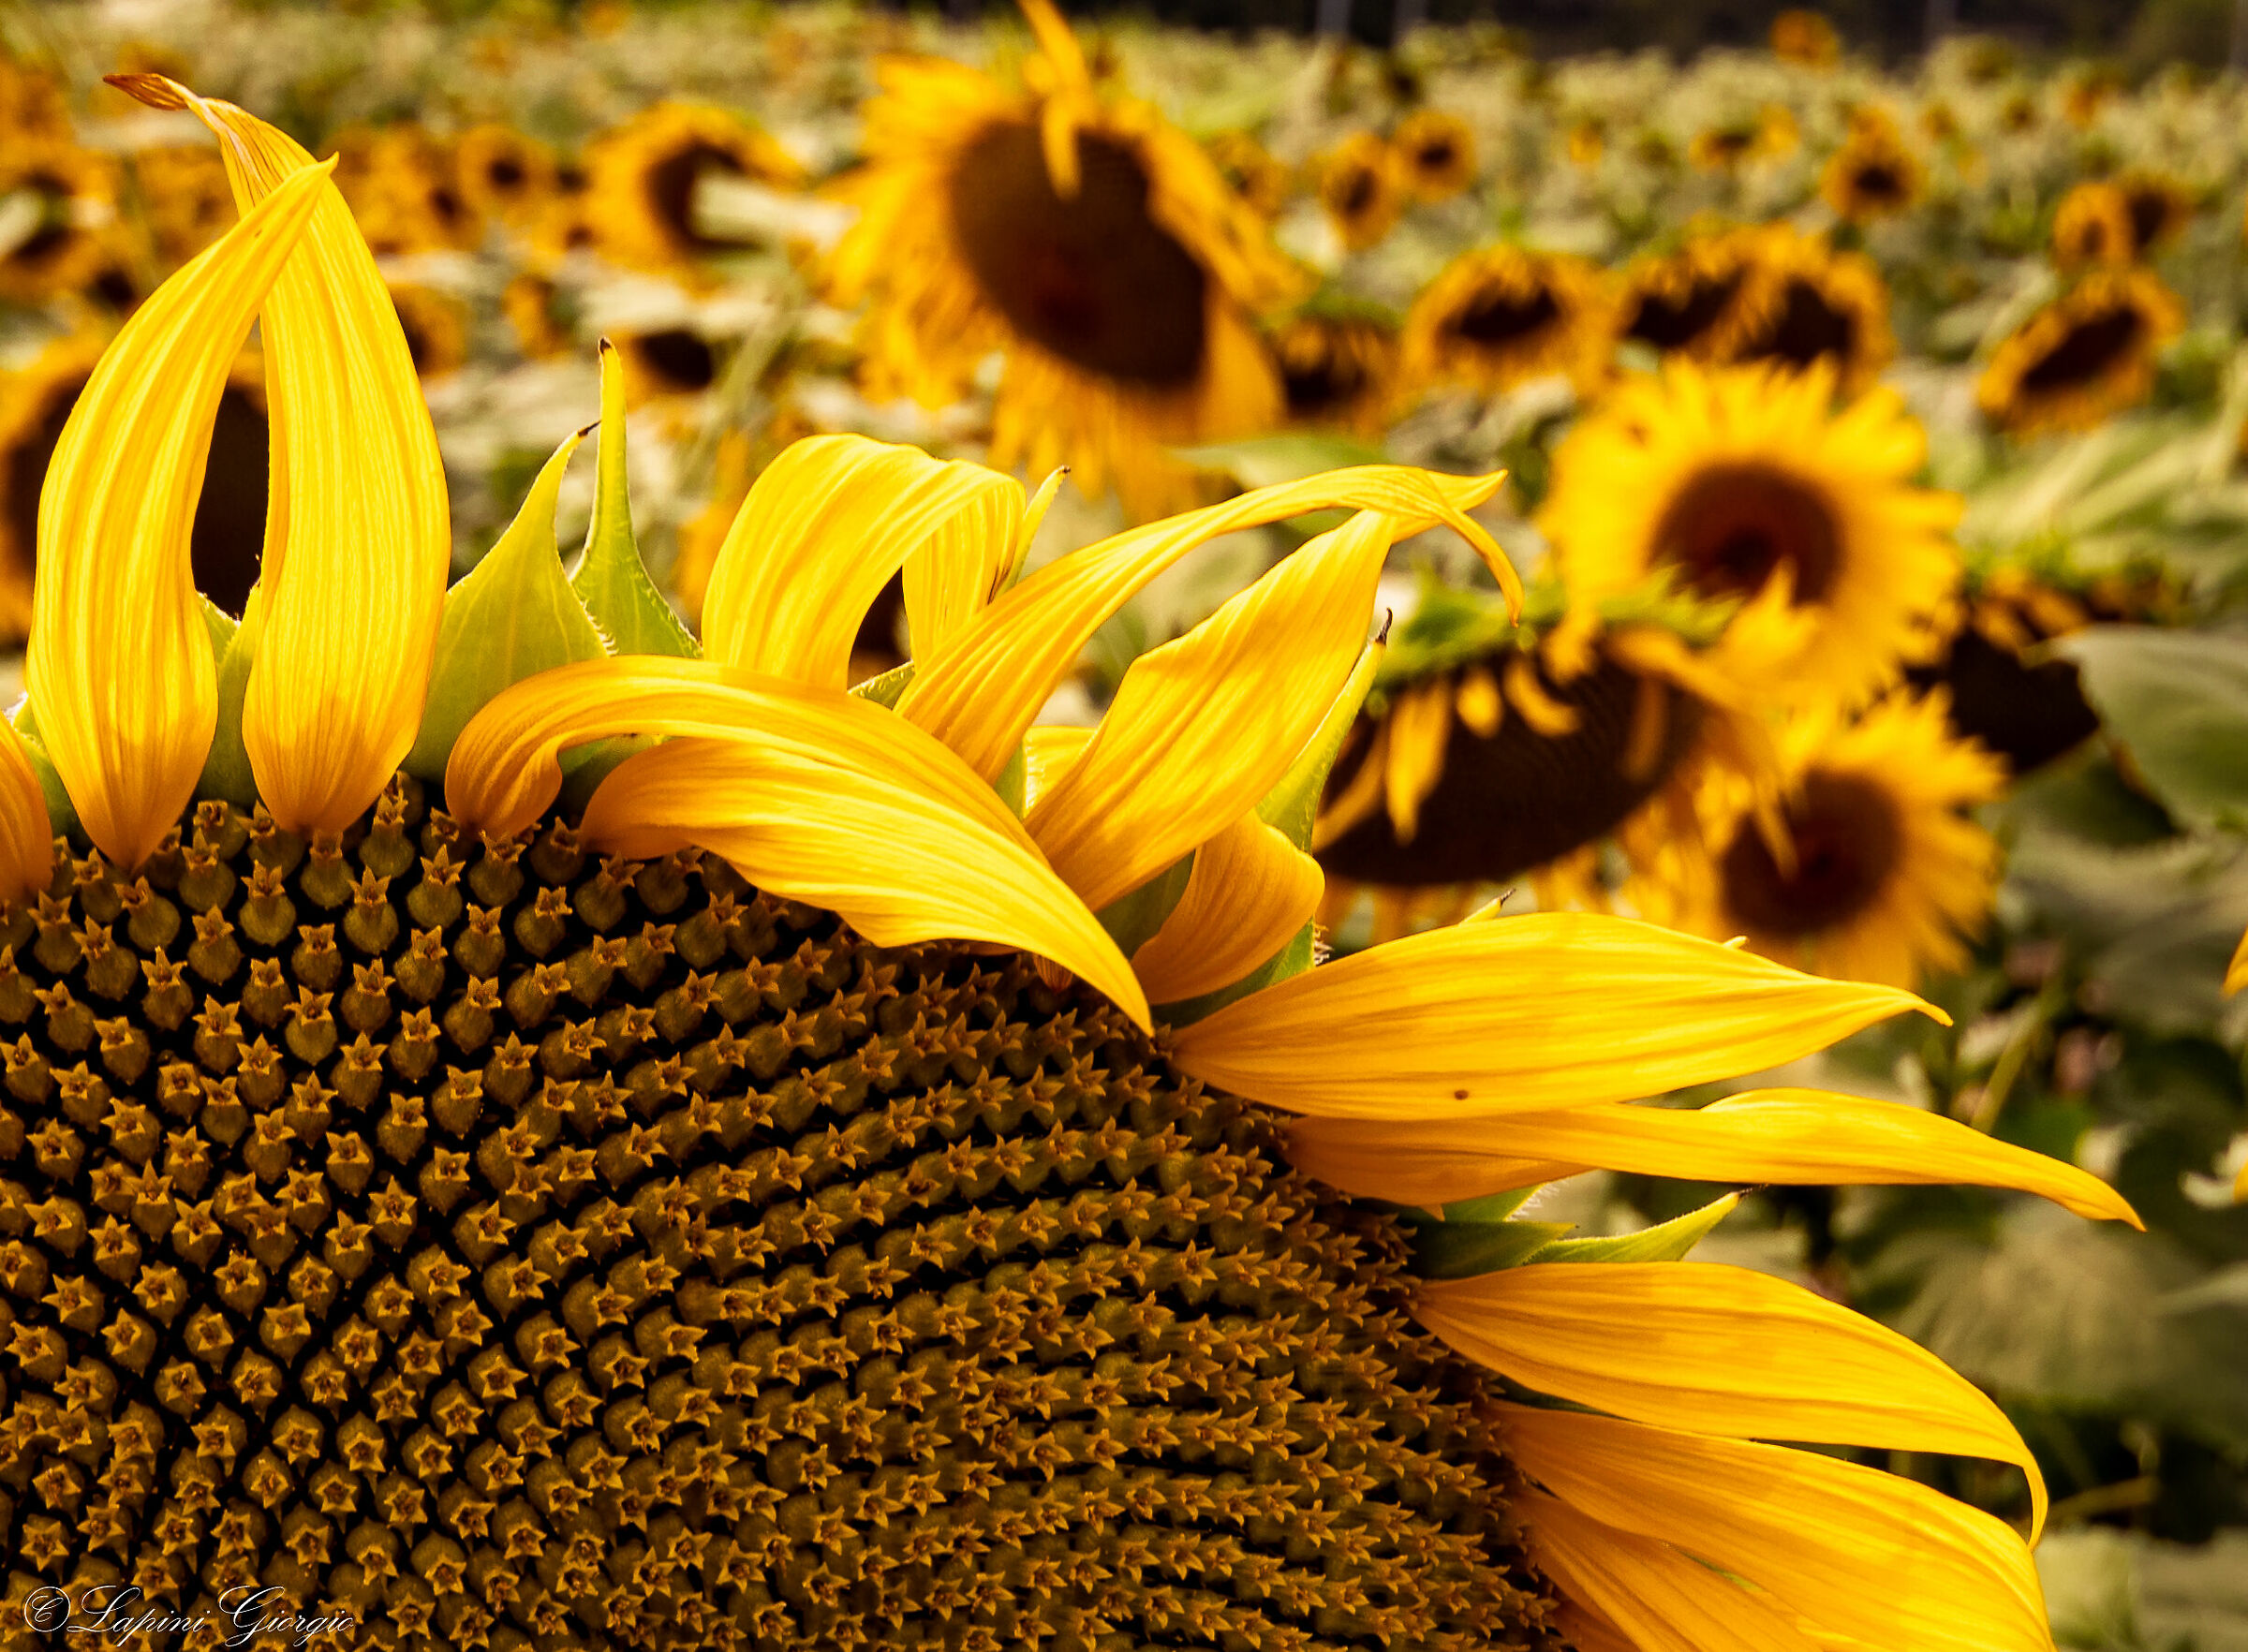 Sunflower details...